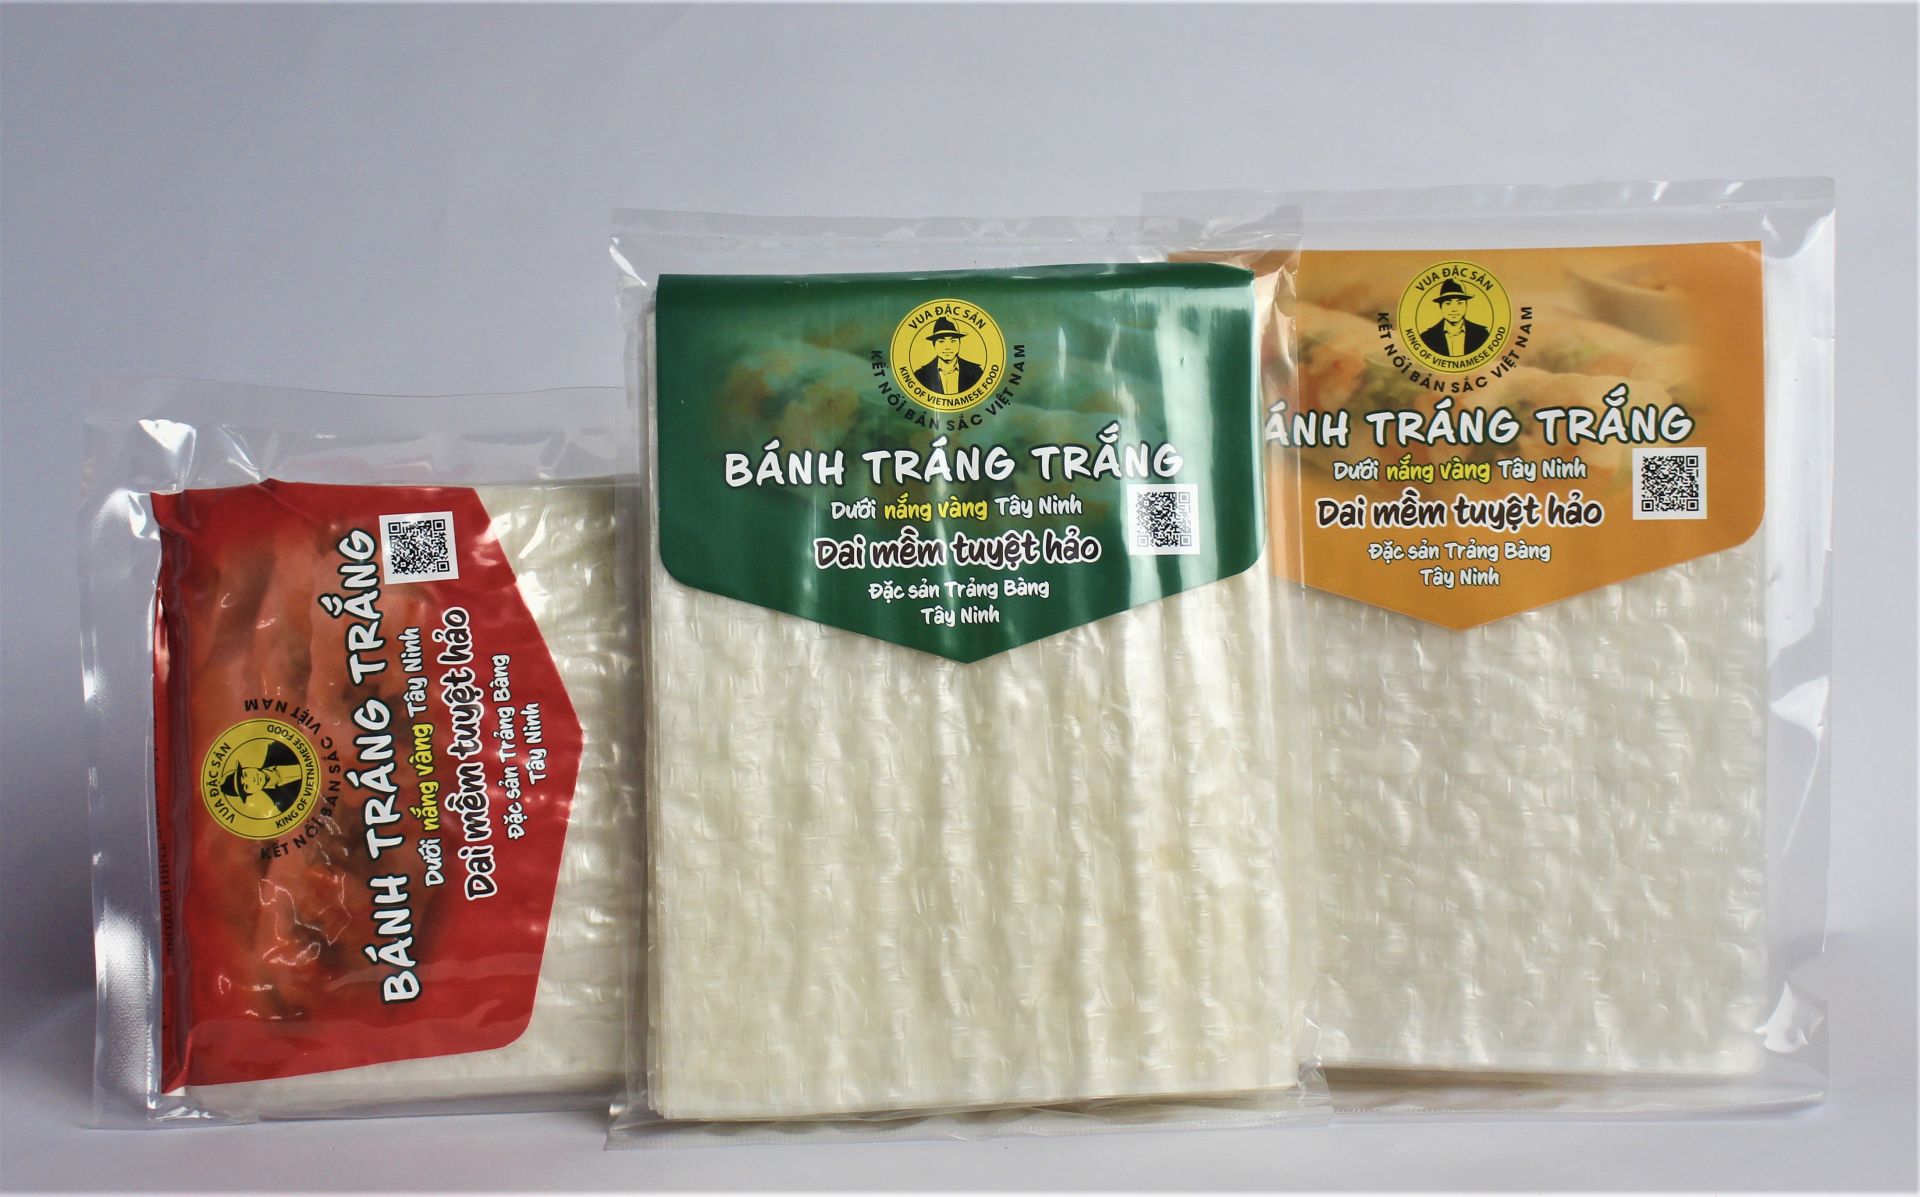 Bánh tráng trắng đặc sản Trảng Bàng Tây Ninh: Tuyệt phẩm đất Tây Ninh